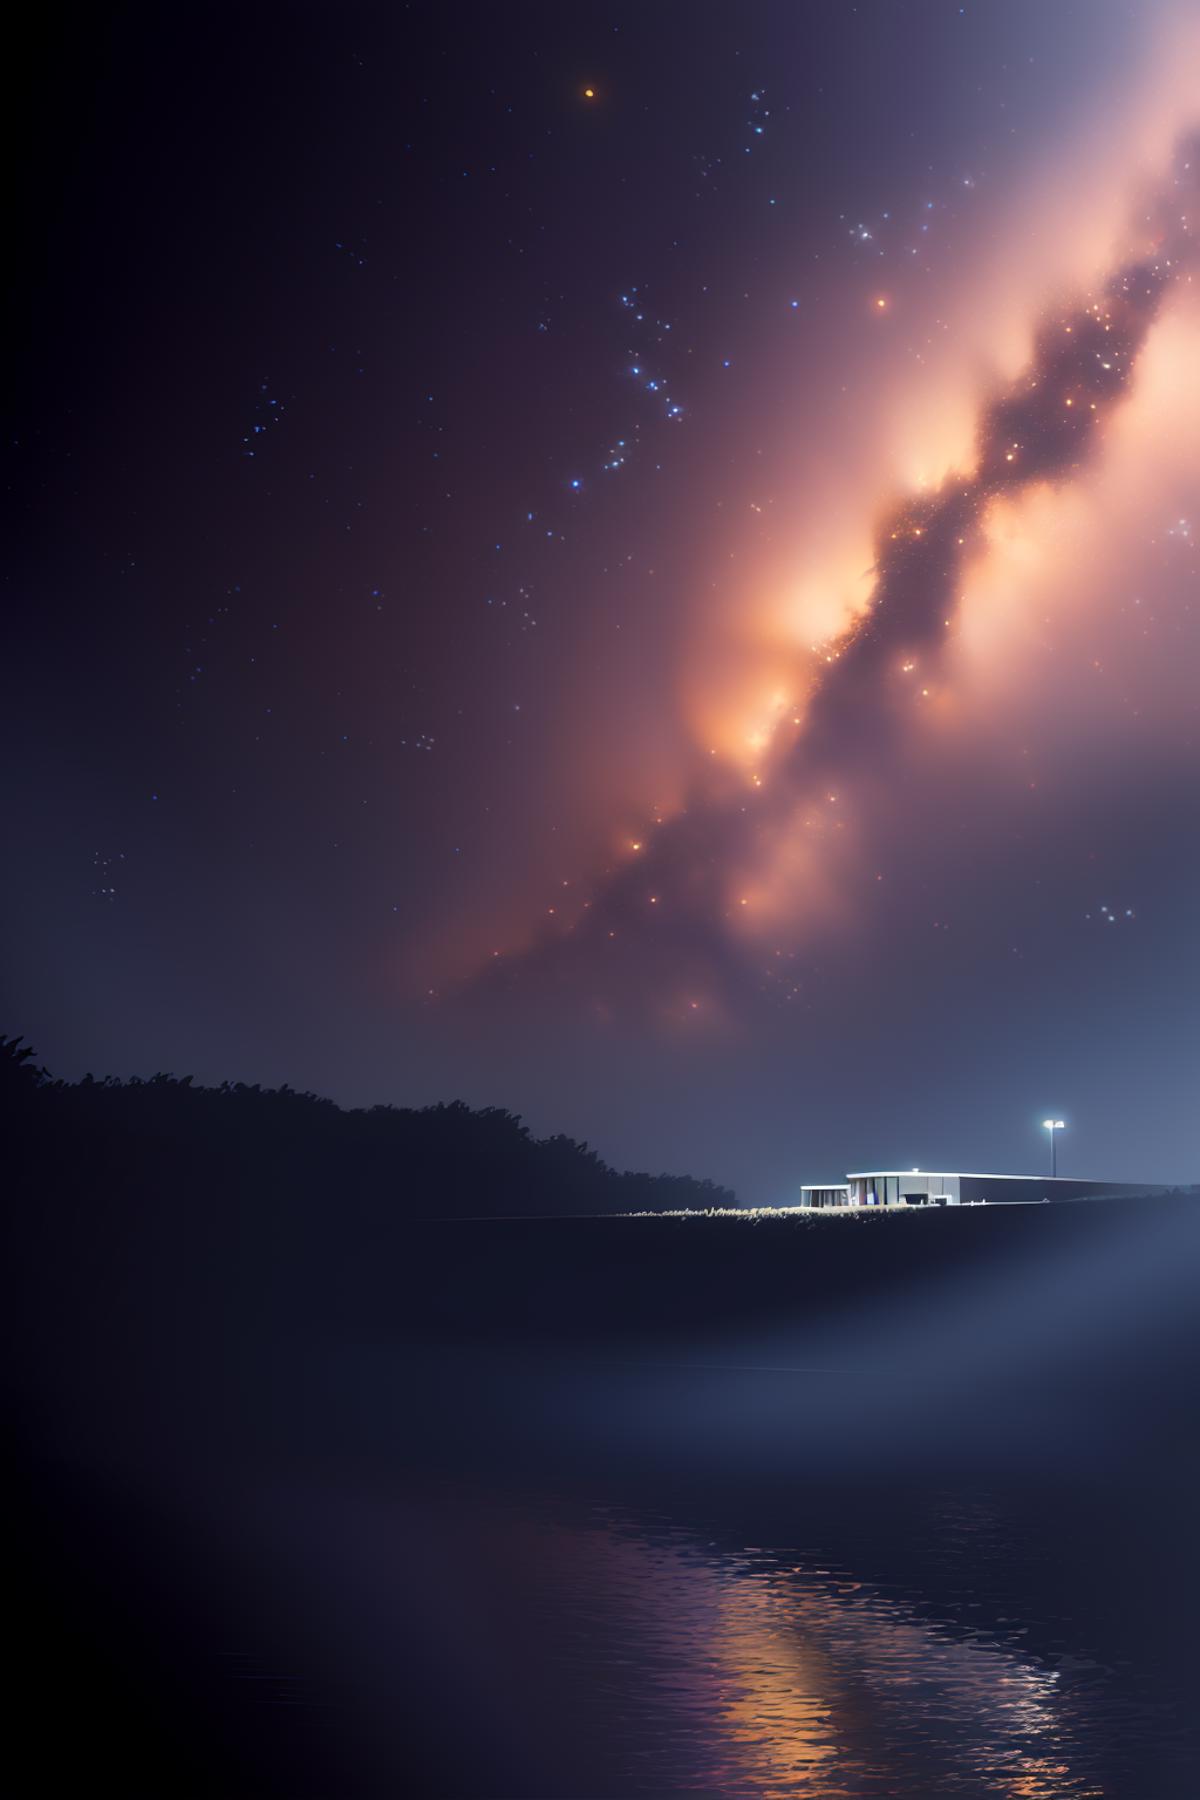 银河_the Milky Way_天の川 image by TanedaRisa